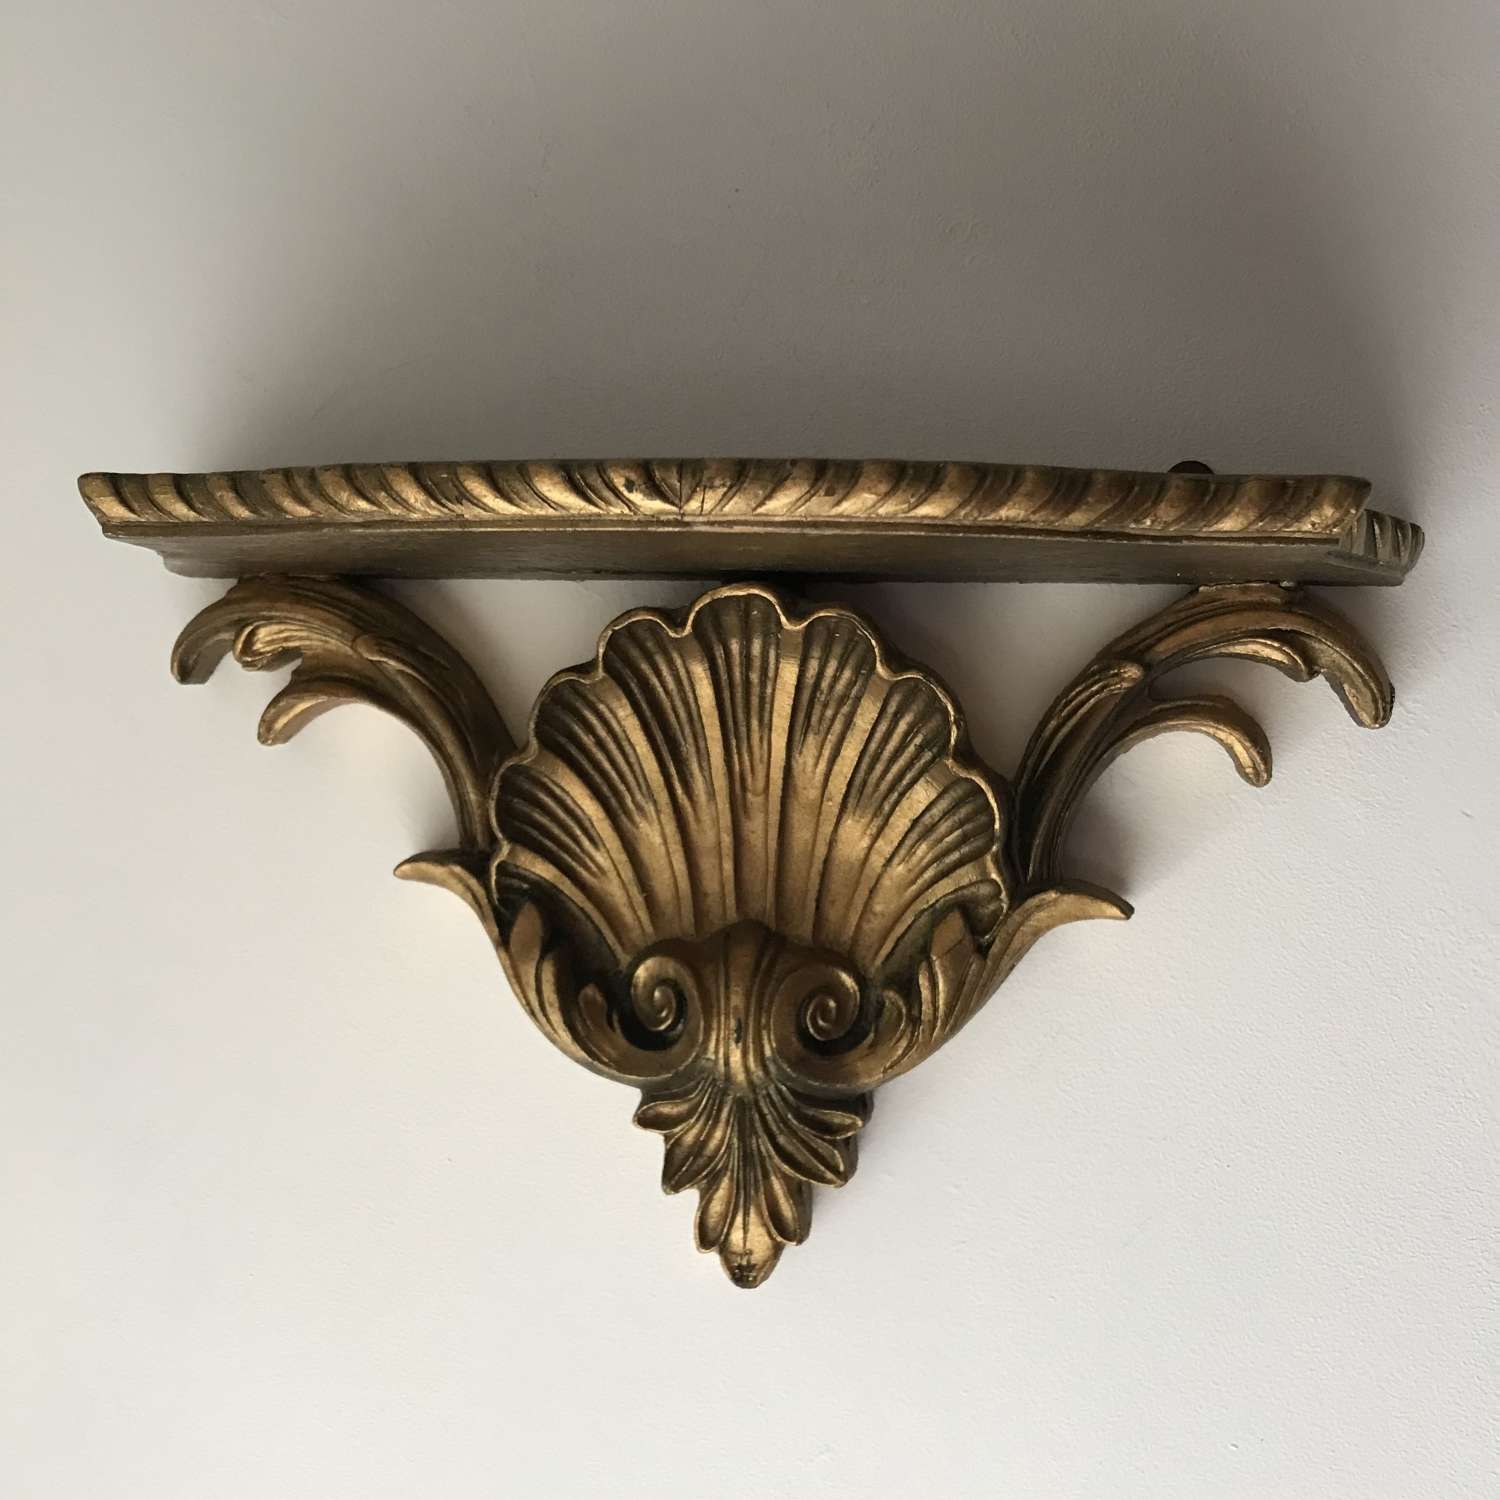 1930’s gilded shell shaped wall shelf.